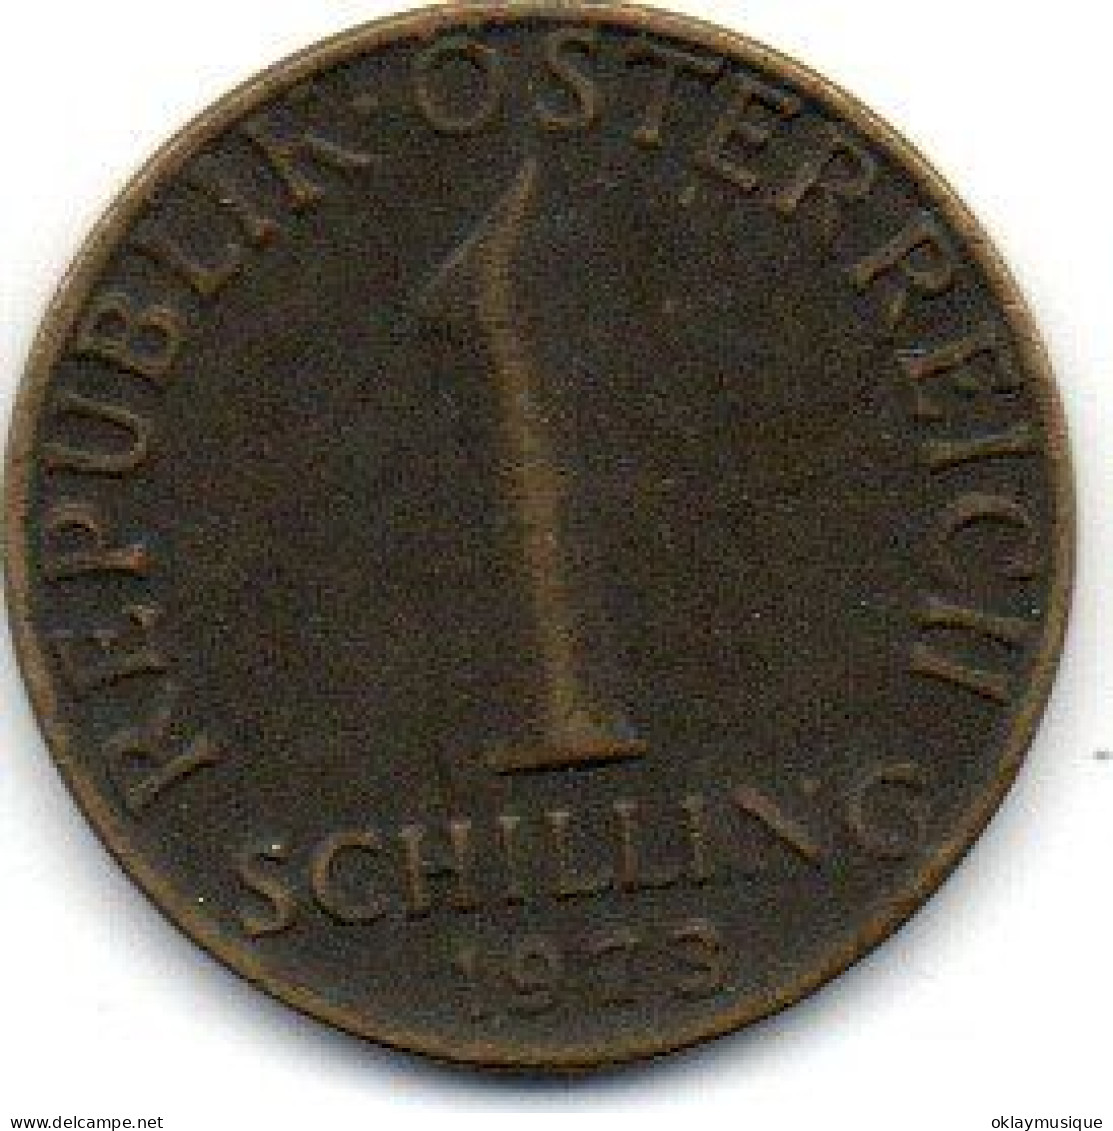 1 Schilling 1973 - Austria